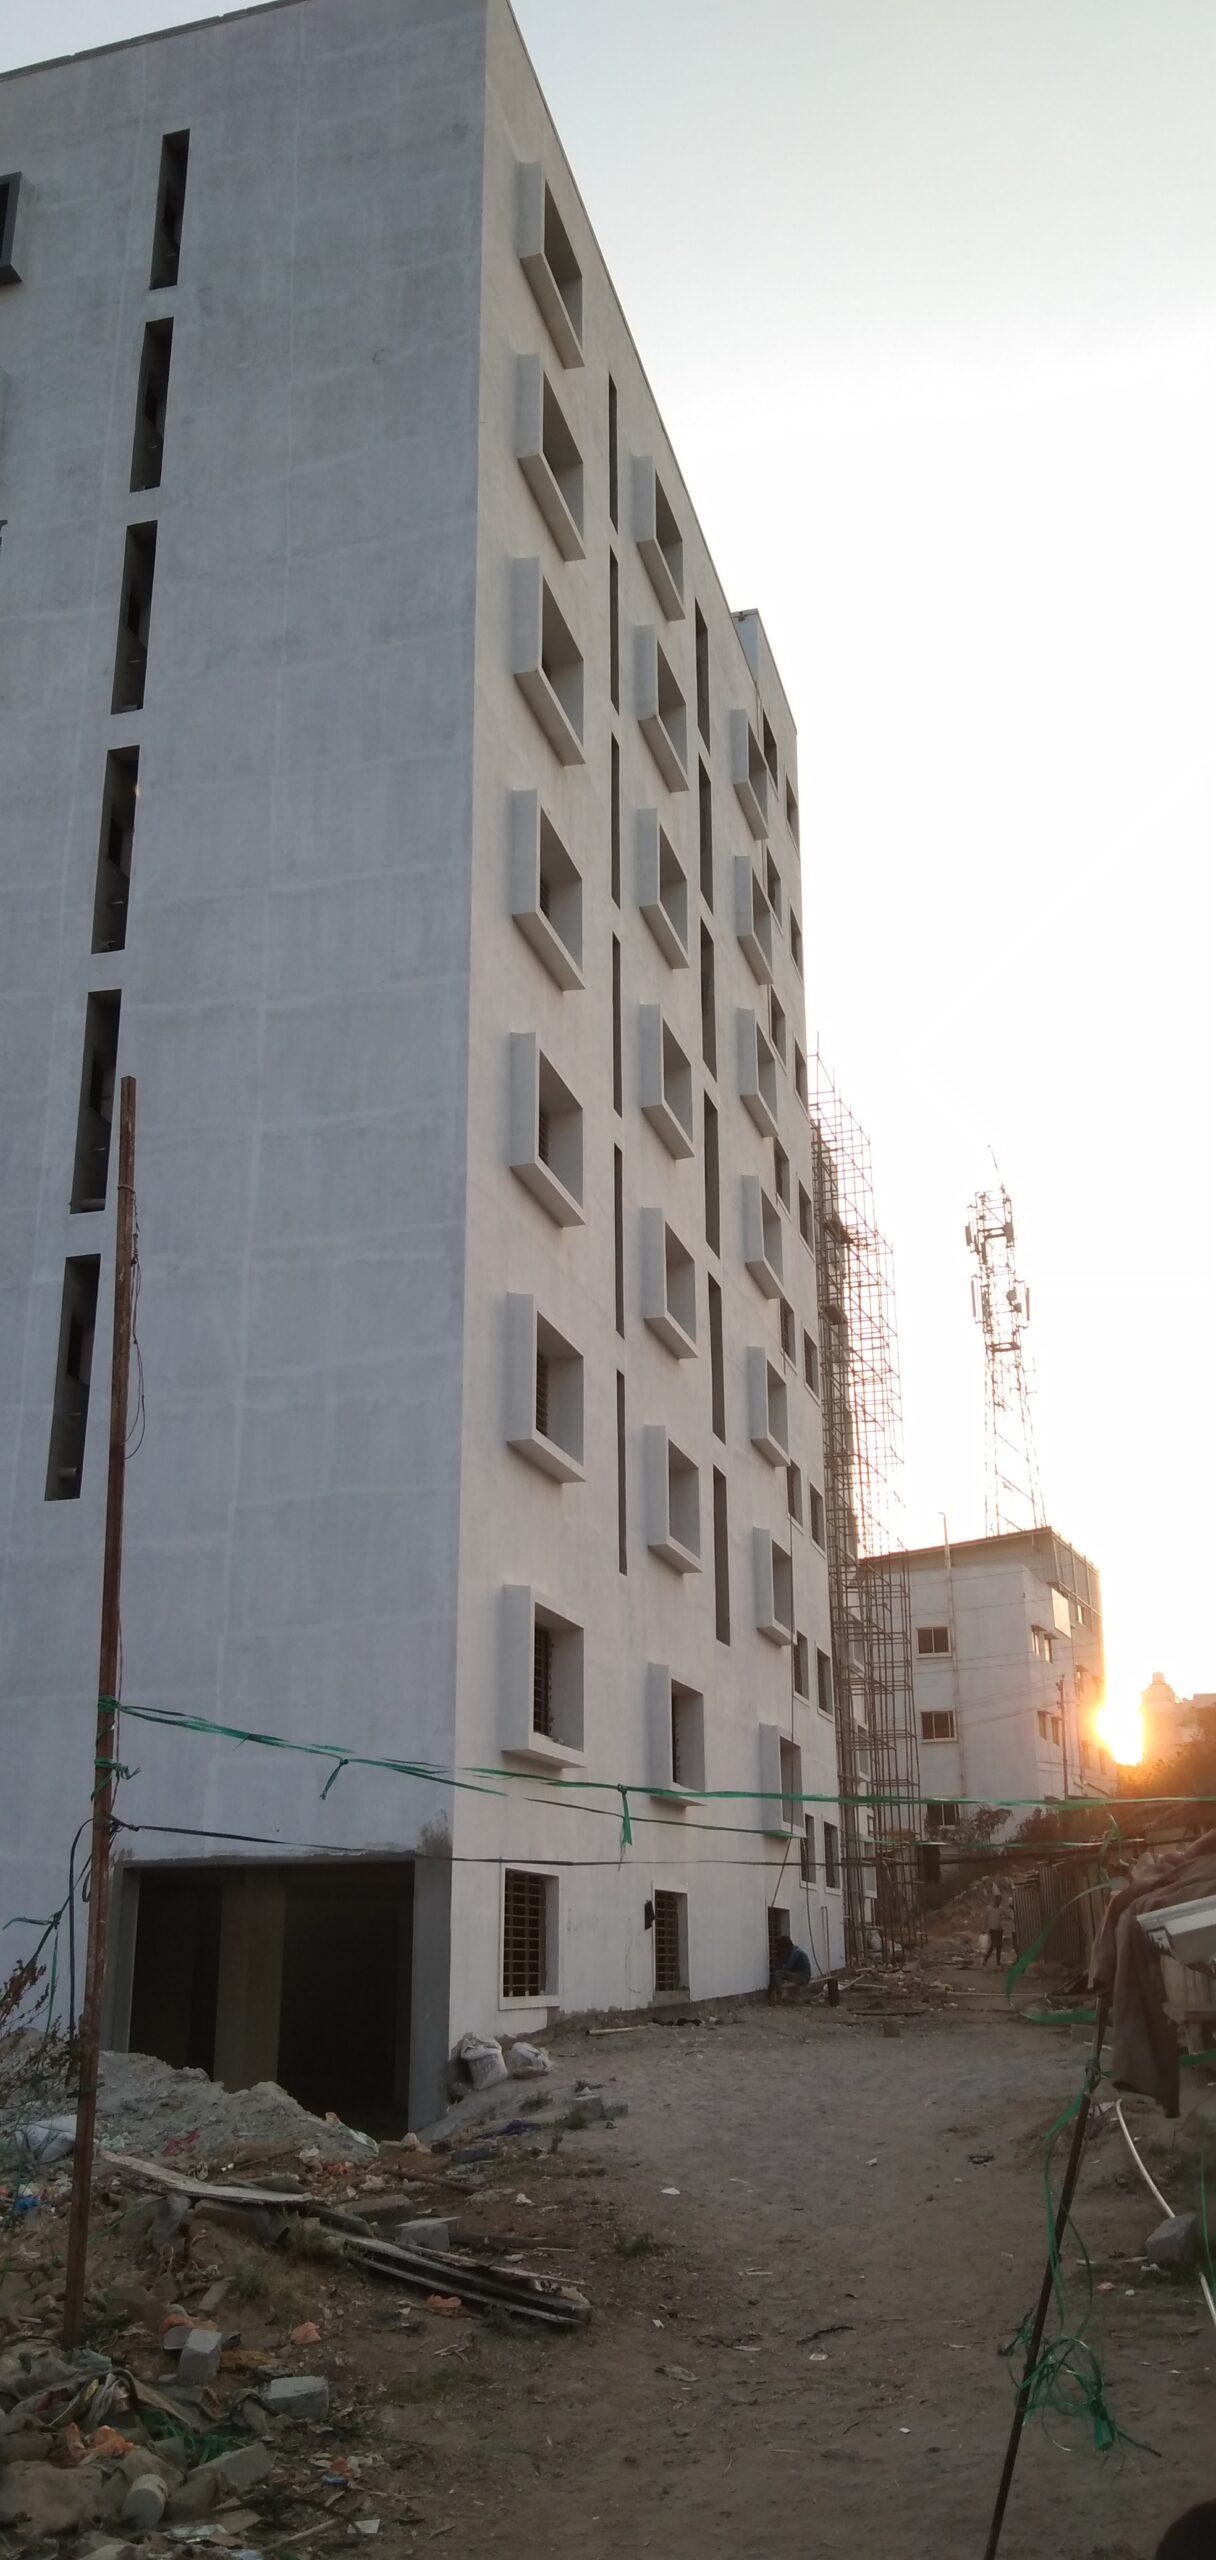 VVCE (hostel block) Mysore